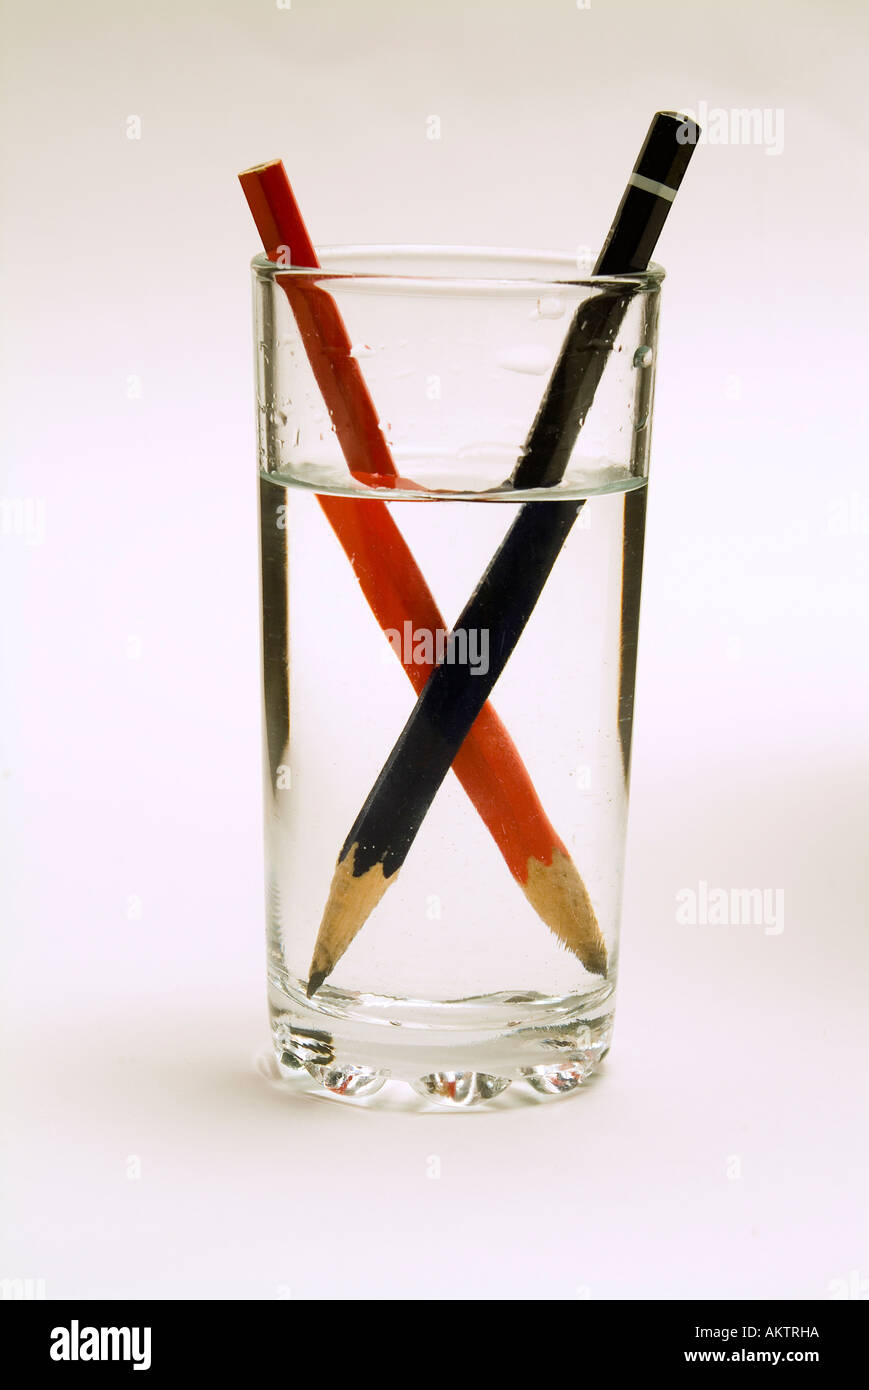 Zwei Stifte in einem Glas Wasser zeigen die optischen Verzerrungen durch  Brechung des Bildes Stockfotografie - Alamy